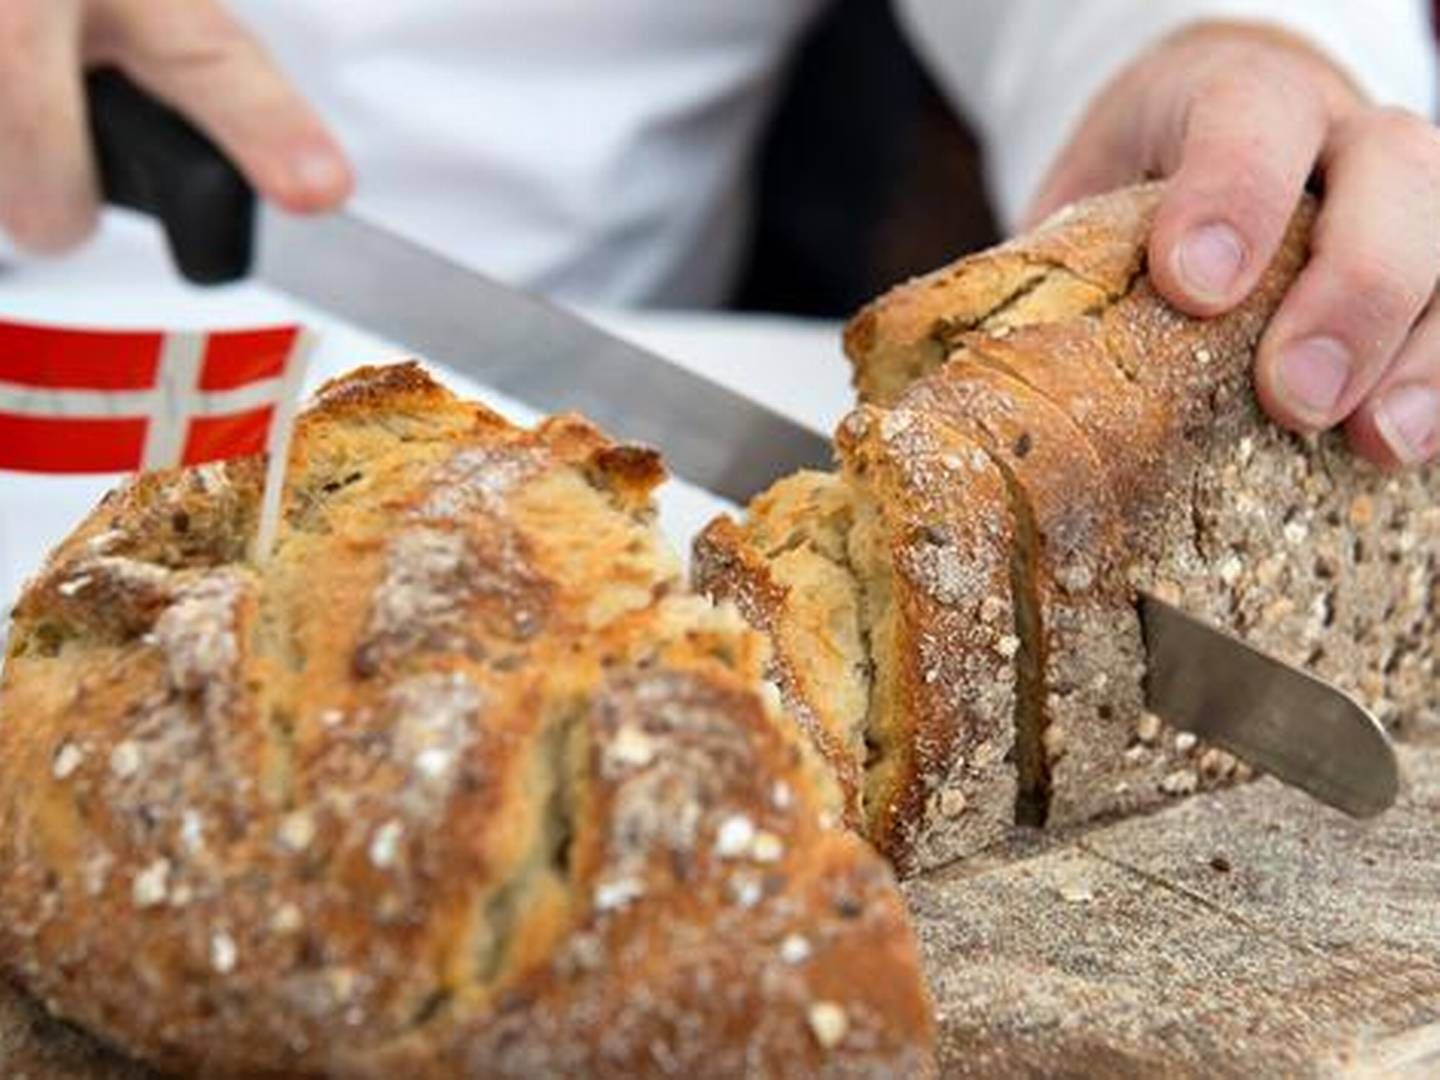 Danske forbrugerpriser på brød og andre fødevarer er de højeste i EU. Også samlet set har Danmark de højeste forbrugerpriser. | Foto: LARS KRABBE